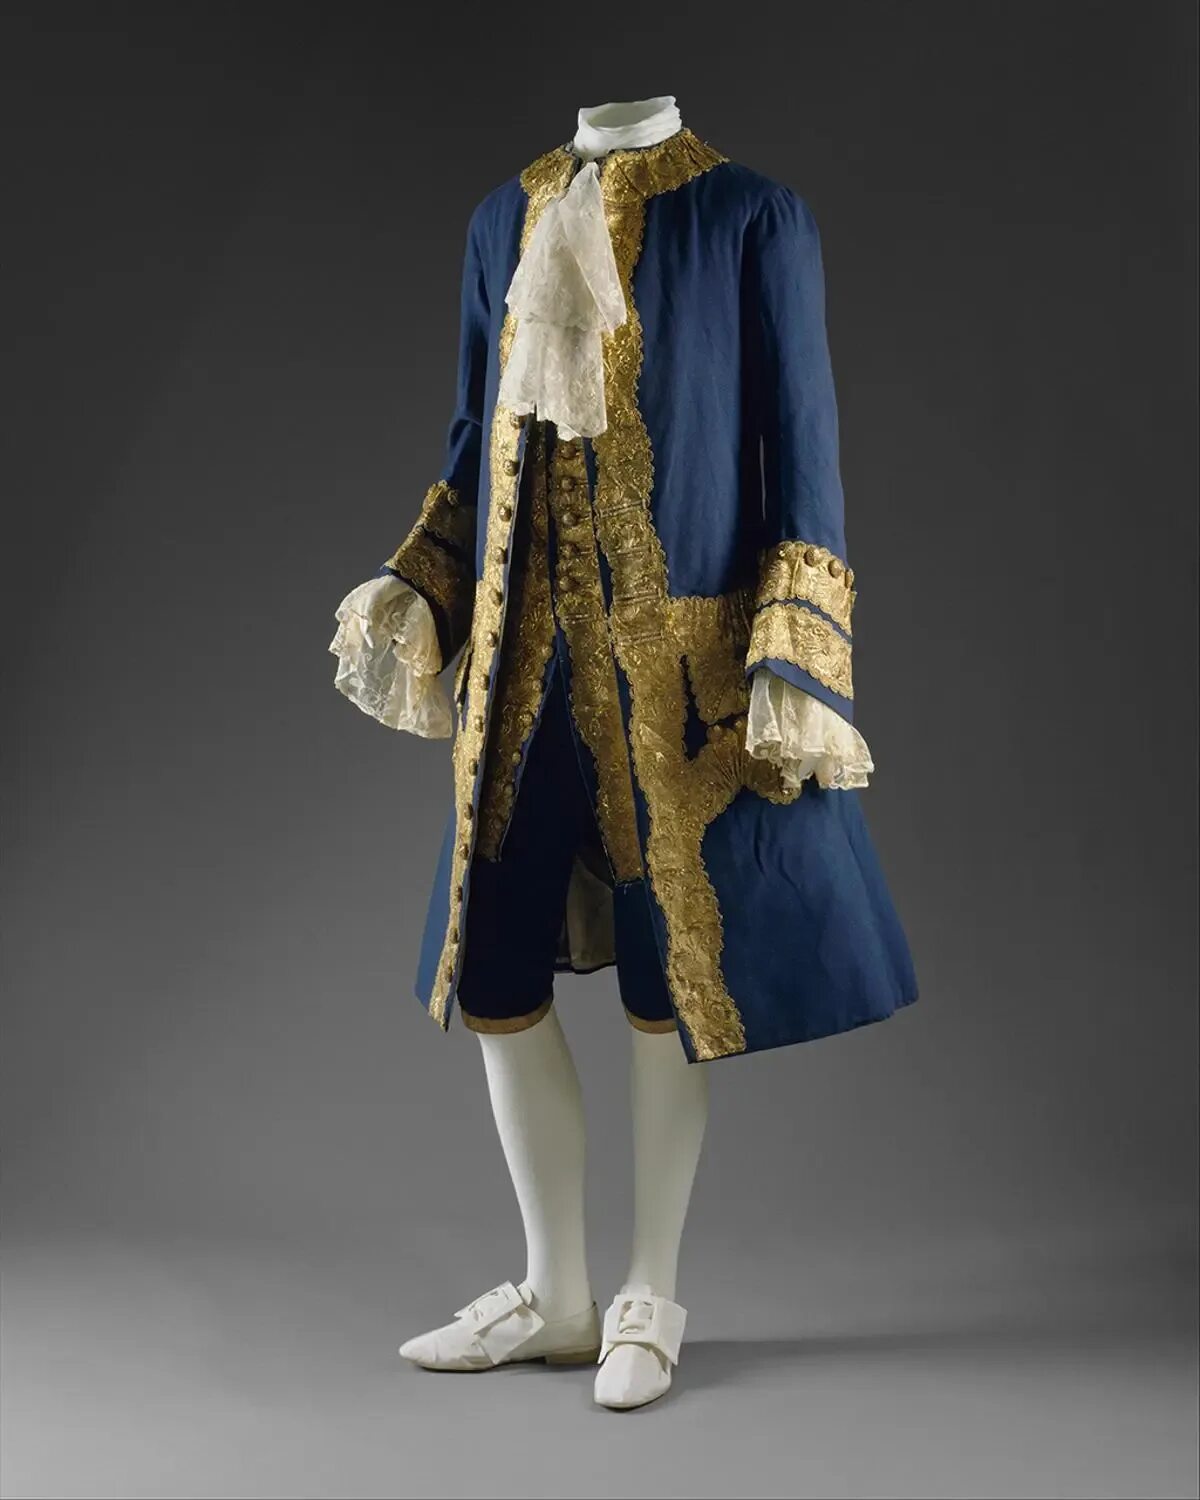 Купить костюм 18. Мужской камзол 17 век Франция. Камзол 18 века Франция. Костюм короля 19 век. Мода рококо 18 век мужская.